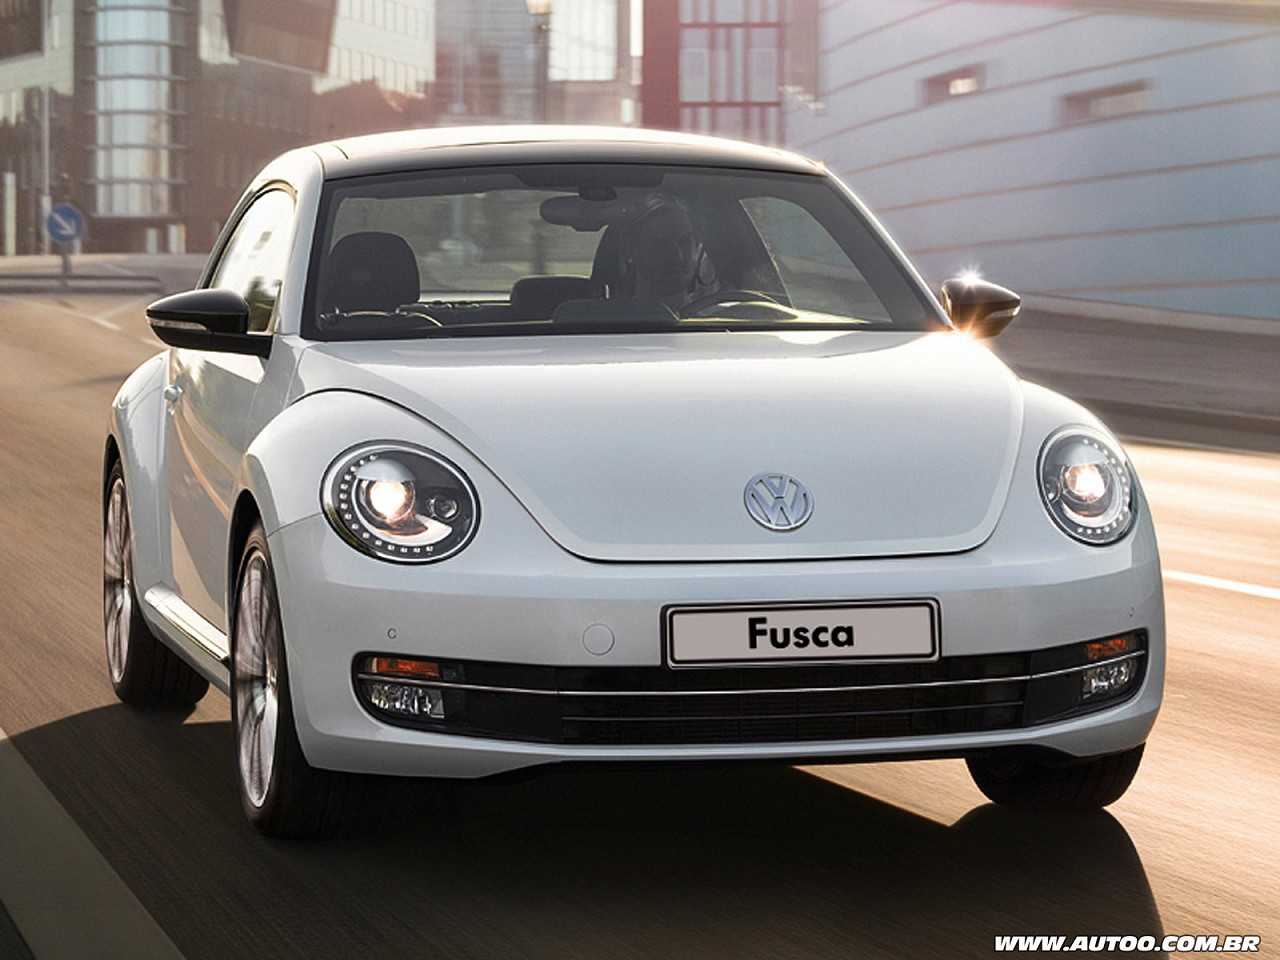 VolkswagenFusca